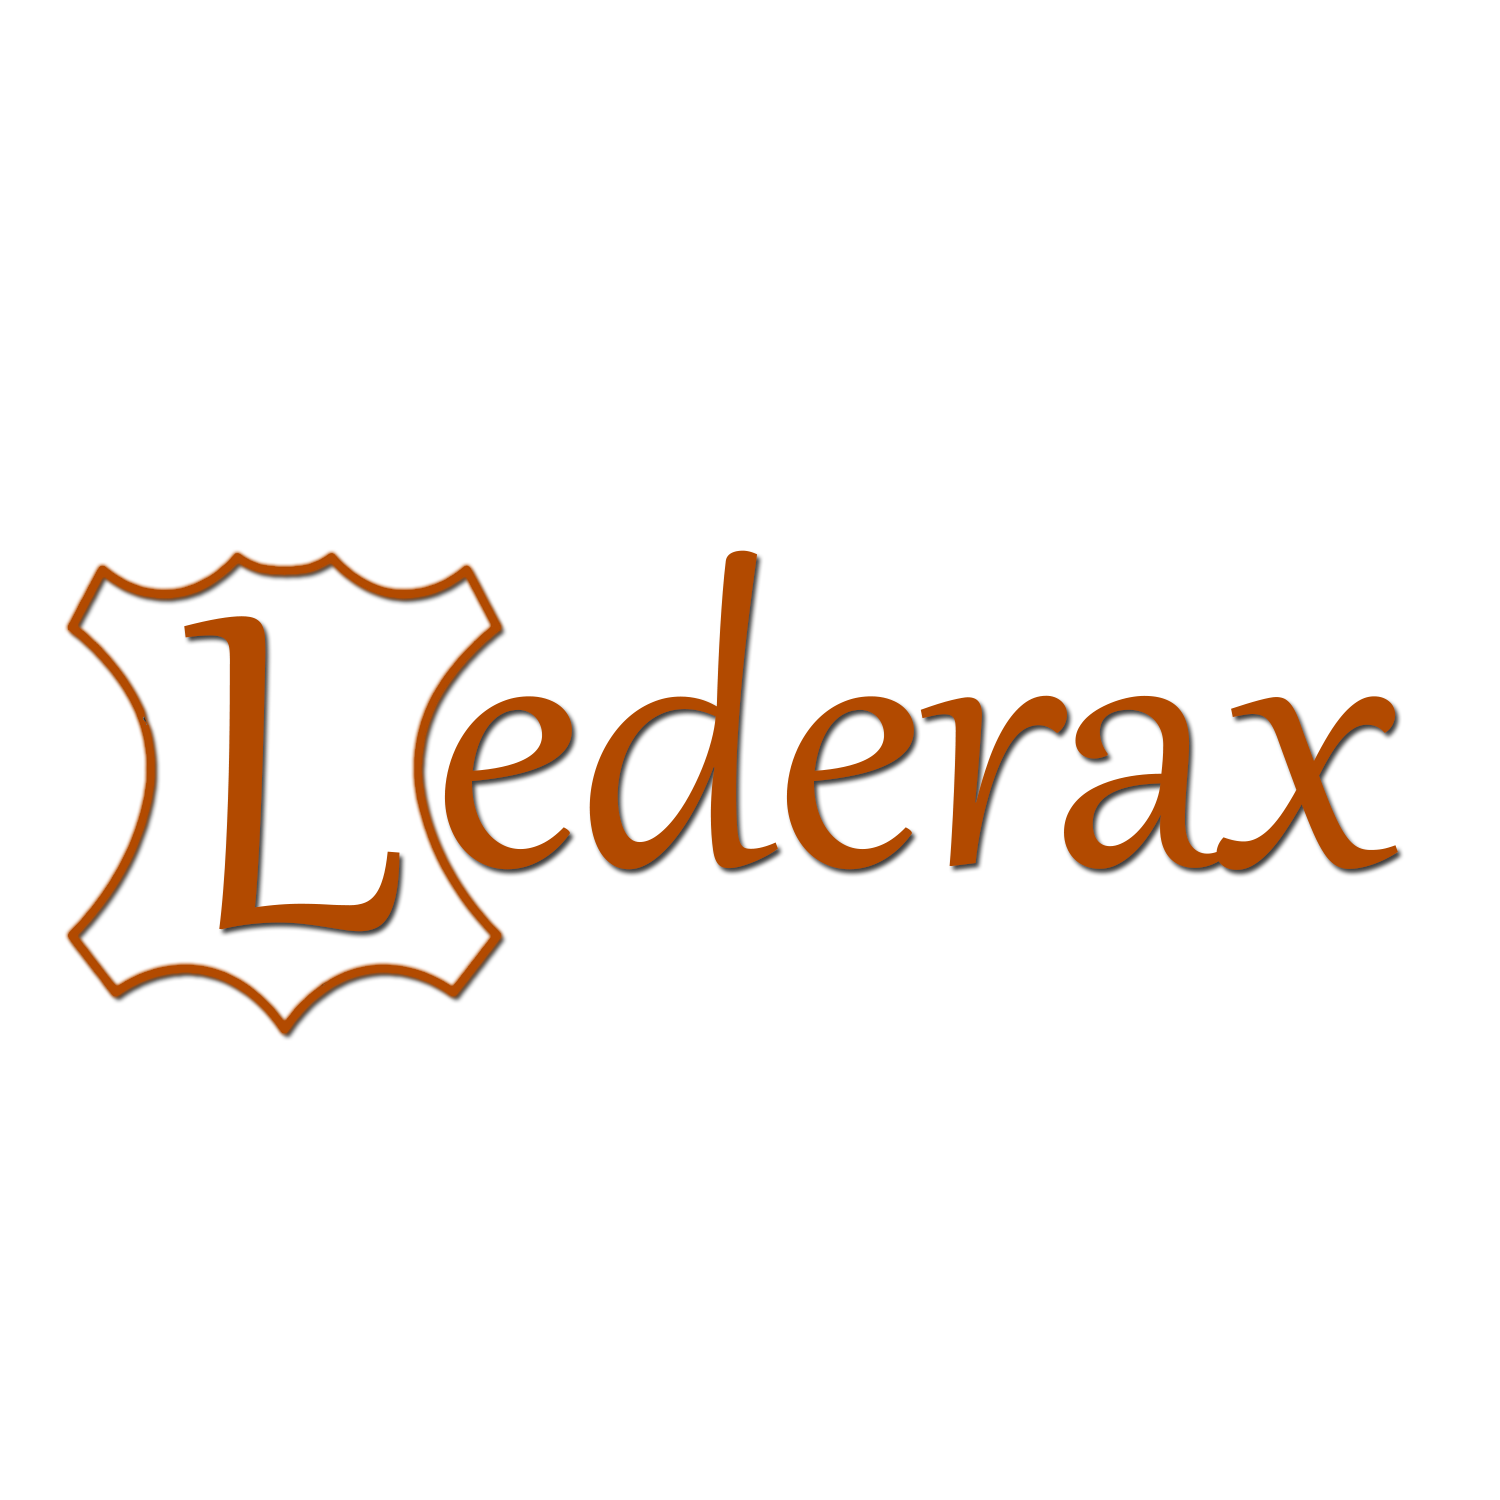 Lederax